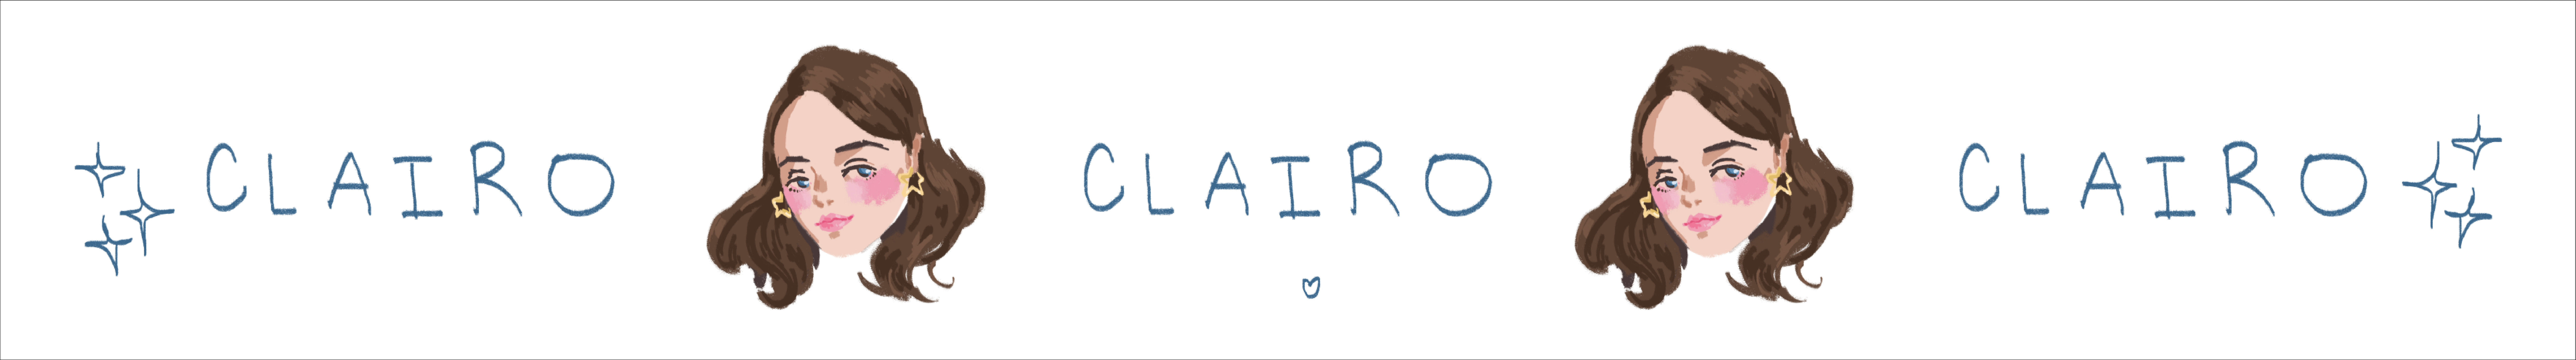 Clairo graphic by Nicole Bae